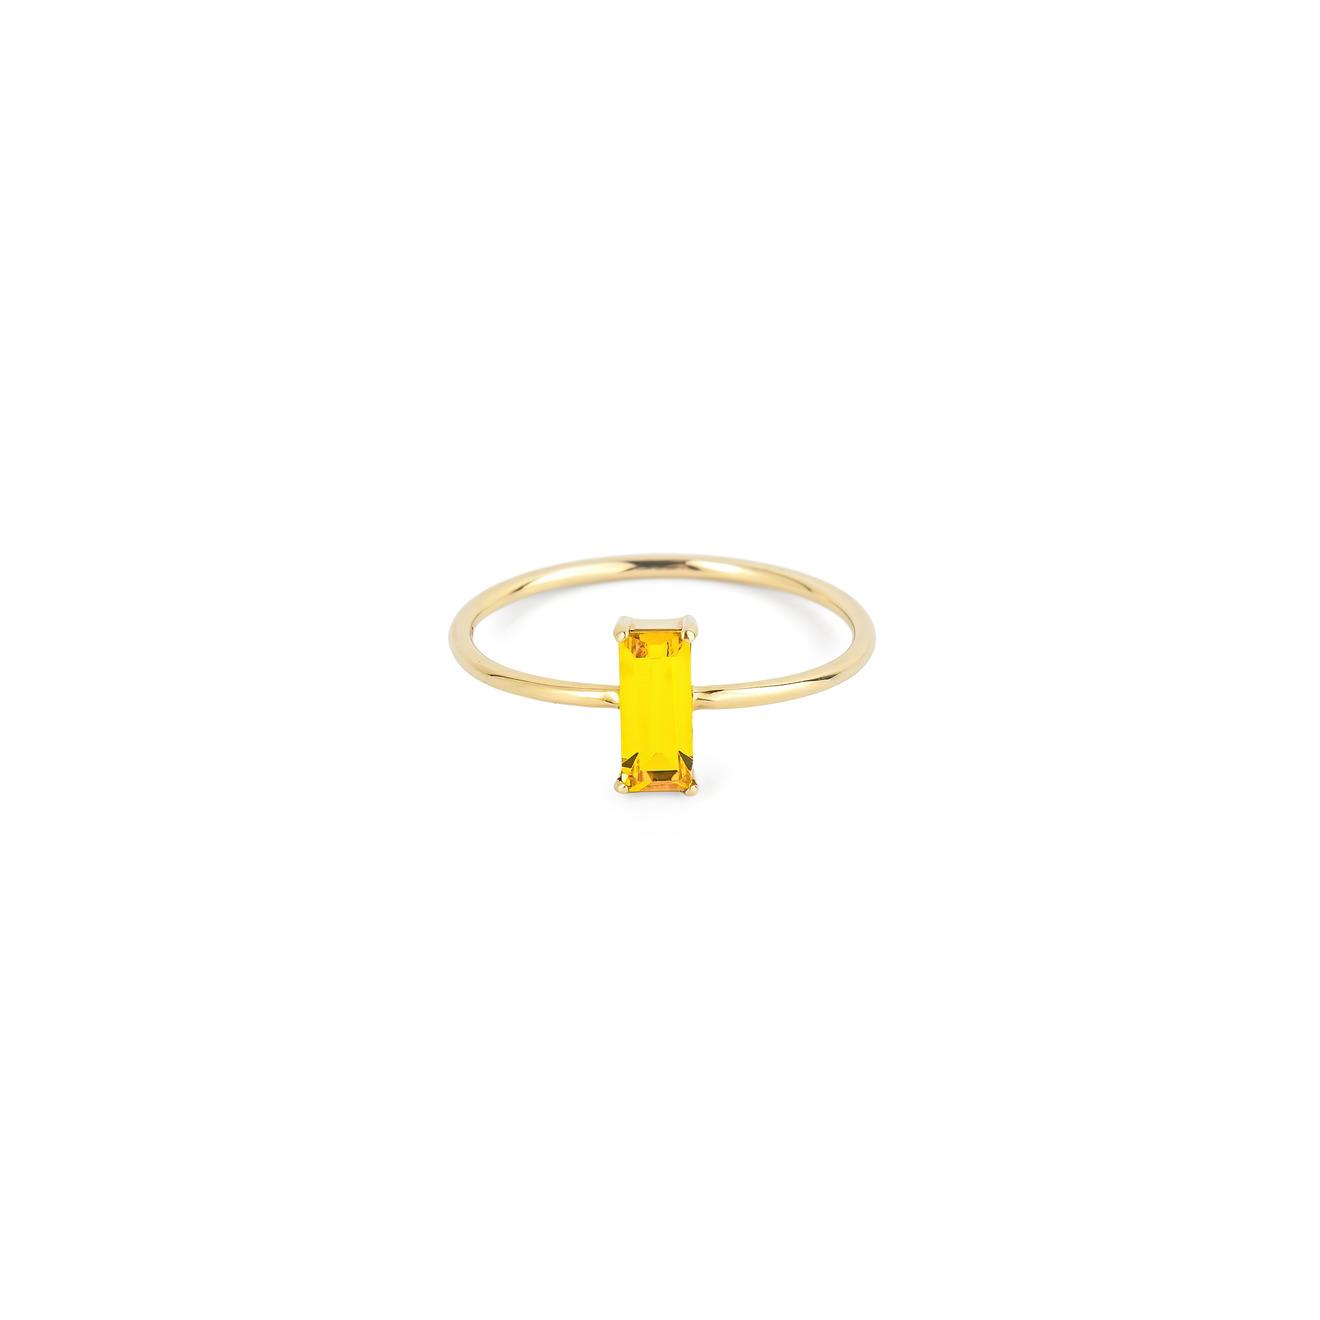 35.02 Кольцо-проволока из золота с желтым кристаллом aqua матовое бисерное кольцо с желтым смайлом